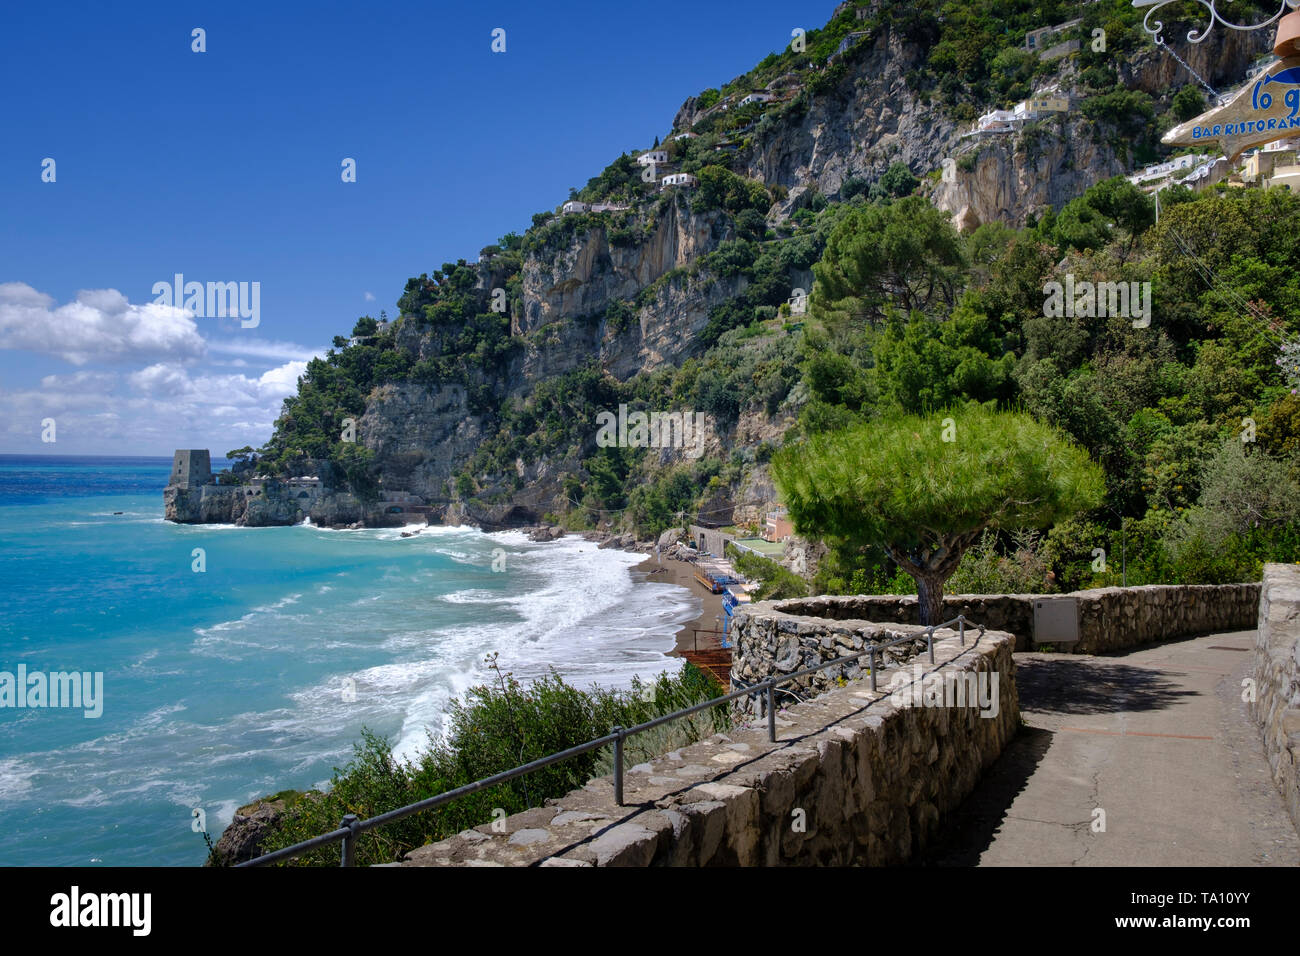 Über Positanesi d'America Coastal Path und die mittelalterlichen Türme südlich von Positano ein am Berghang gelegenes Dorf und Ferienort an der Küste von Amalfi Italien Stockfoto